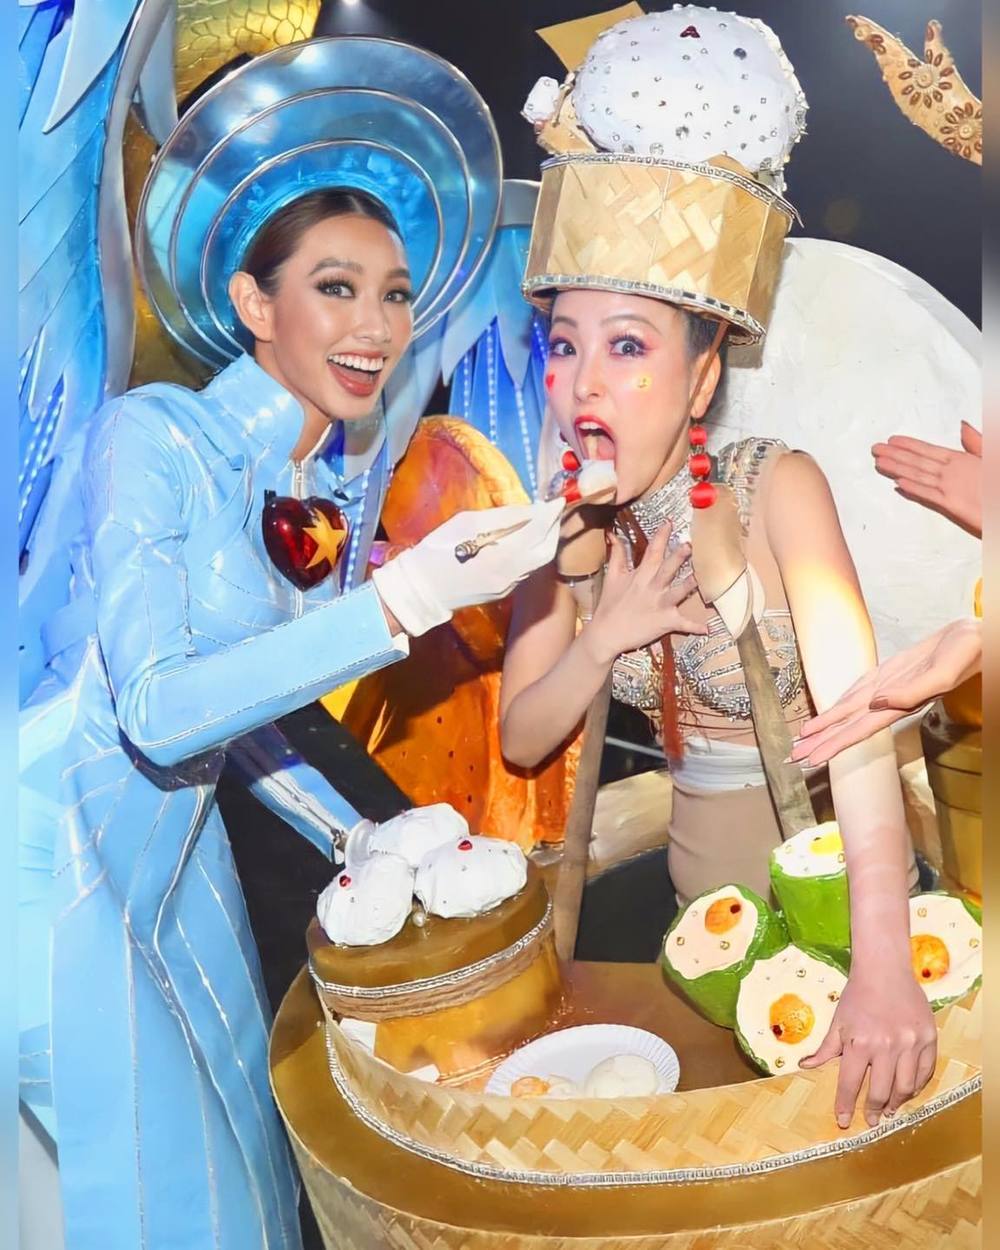  
Thùy Tiên và Miss Grand Hồng Kông có mối quan hệ khá thân thiết khi tham gia đấu trường sắc đẹp tại "xứ sở chùa Vàng". (Ảnh: MGI)